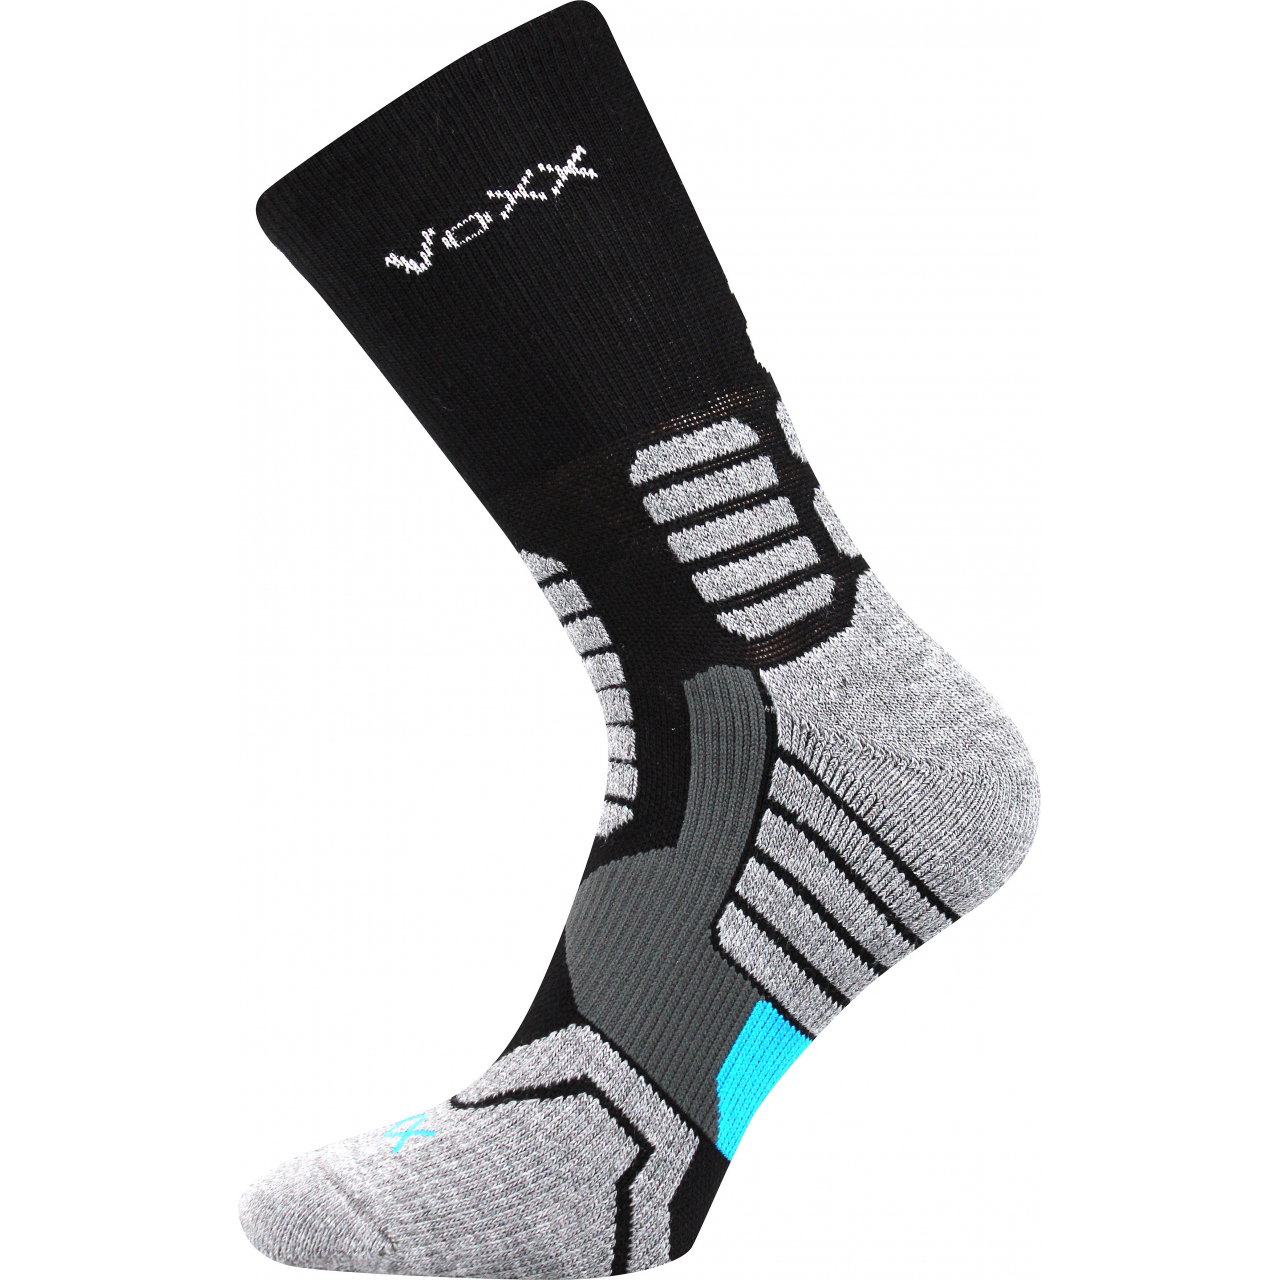 Ponožky kompresní unisex Voxx Ronin - černé-šedé, 43-46